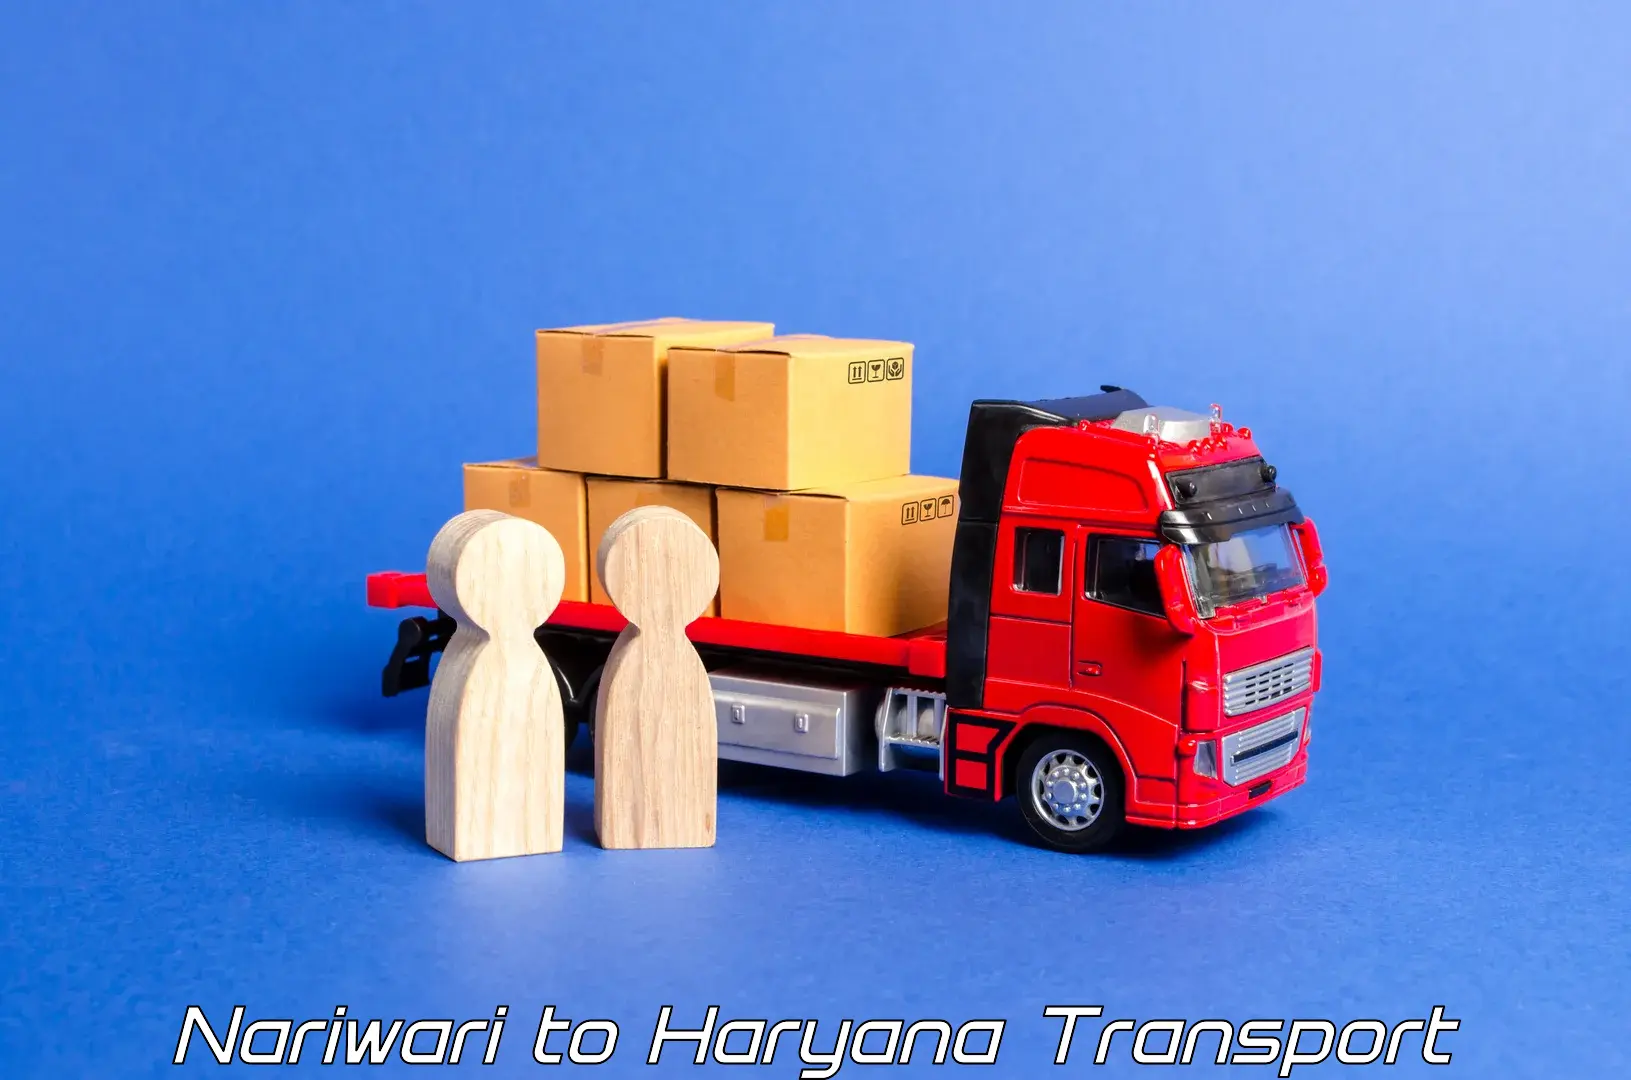 Cargo transport services in Nariwari to Ambala